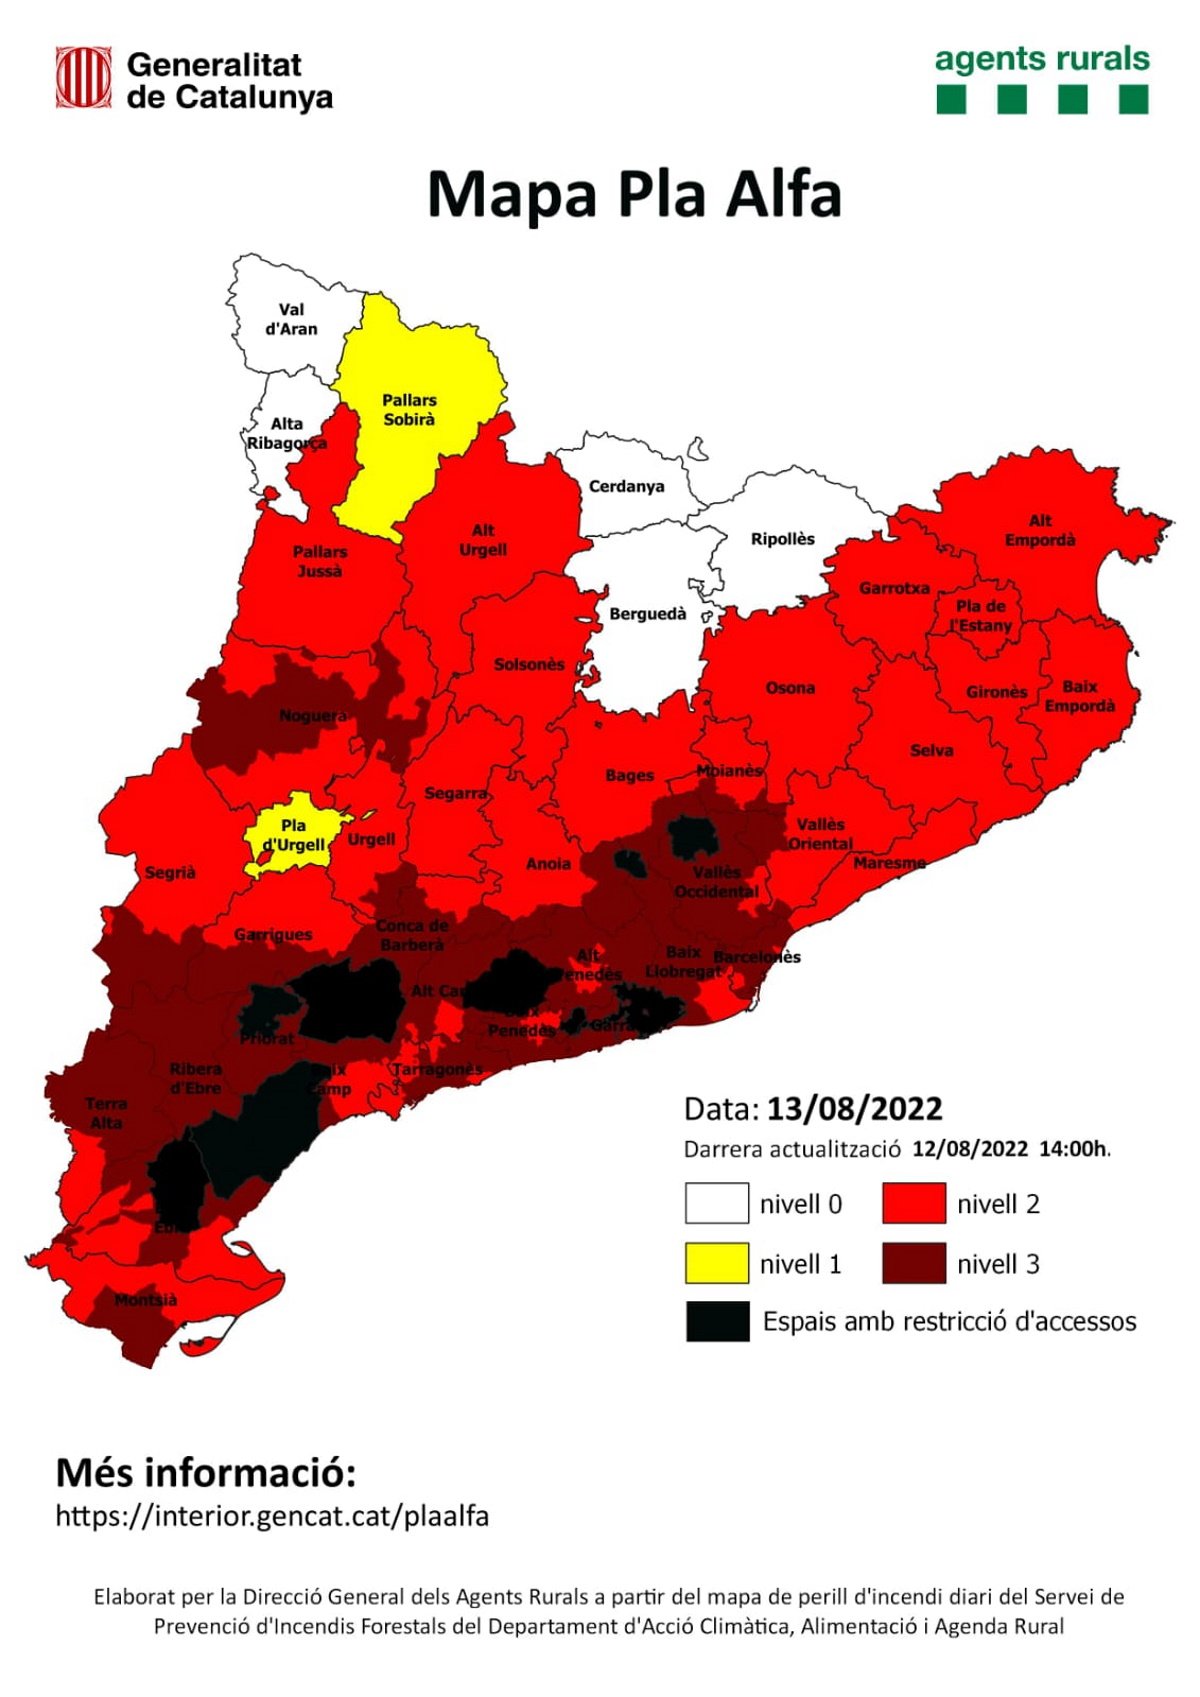 Riesgo de incendio en Catalunya: mapa del Plan Alfa 3 actualizado por la ola de calor 2022